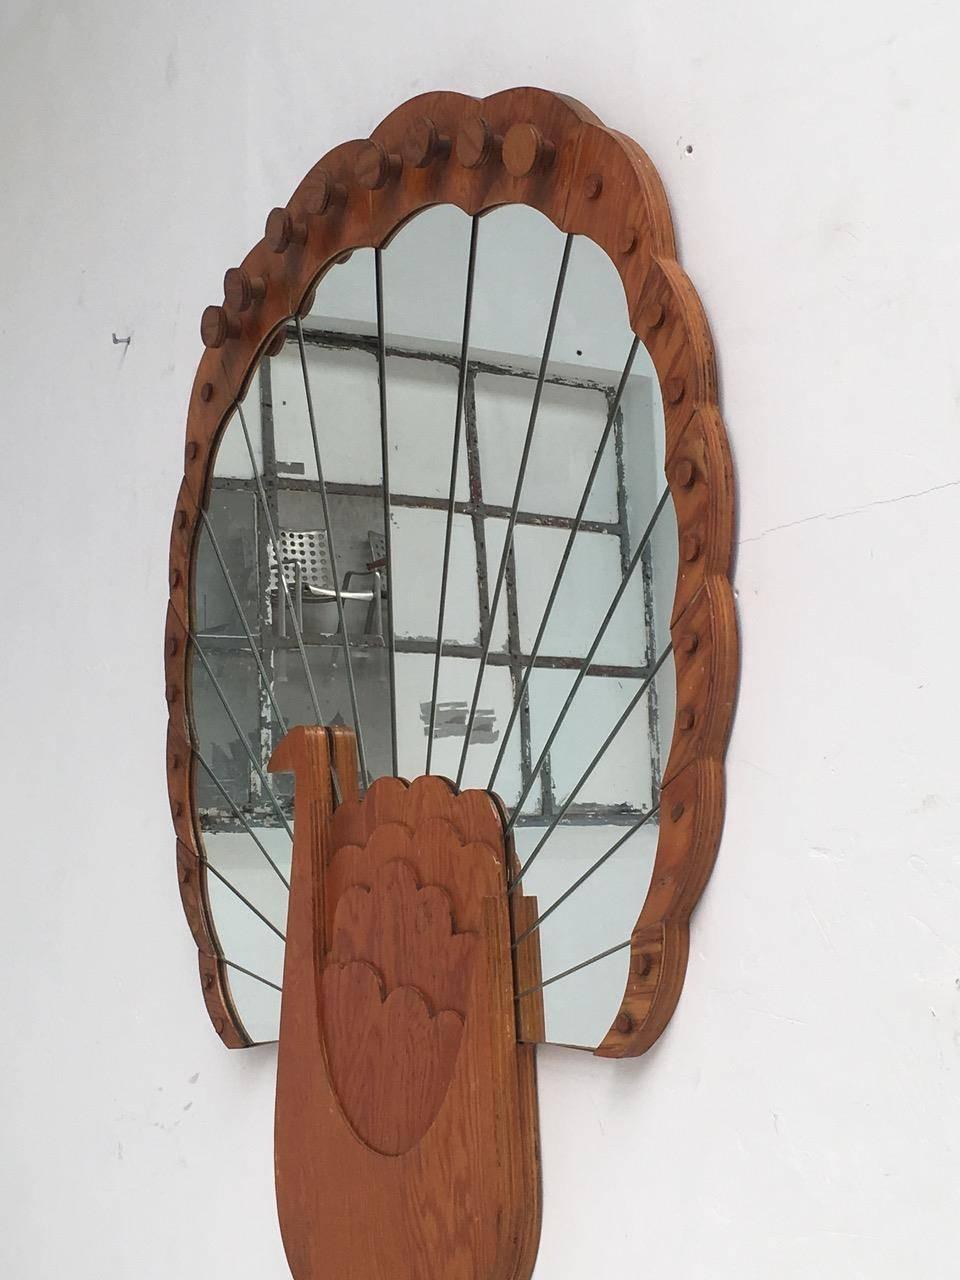 Hand-Crafted 'Pavone' Mirror by Artist Sirio Alessandri, 73